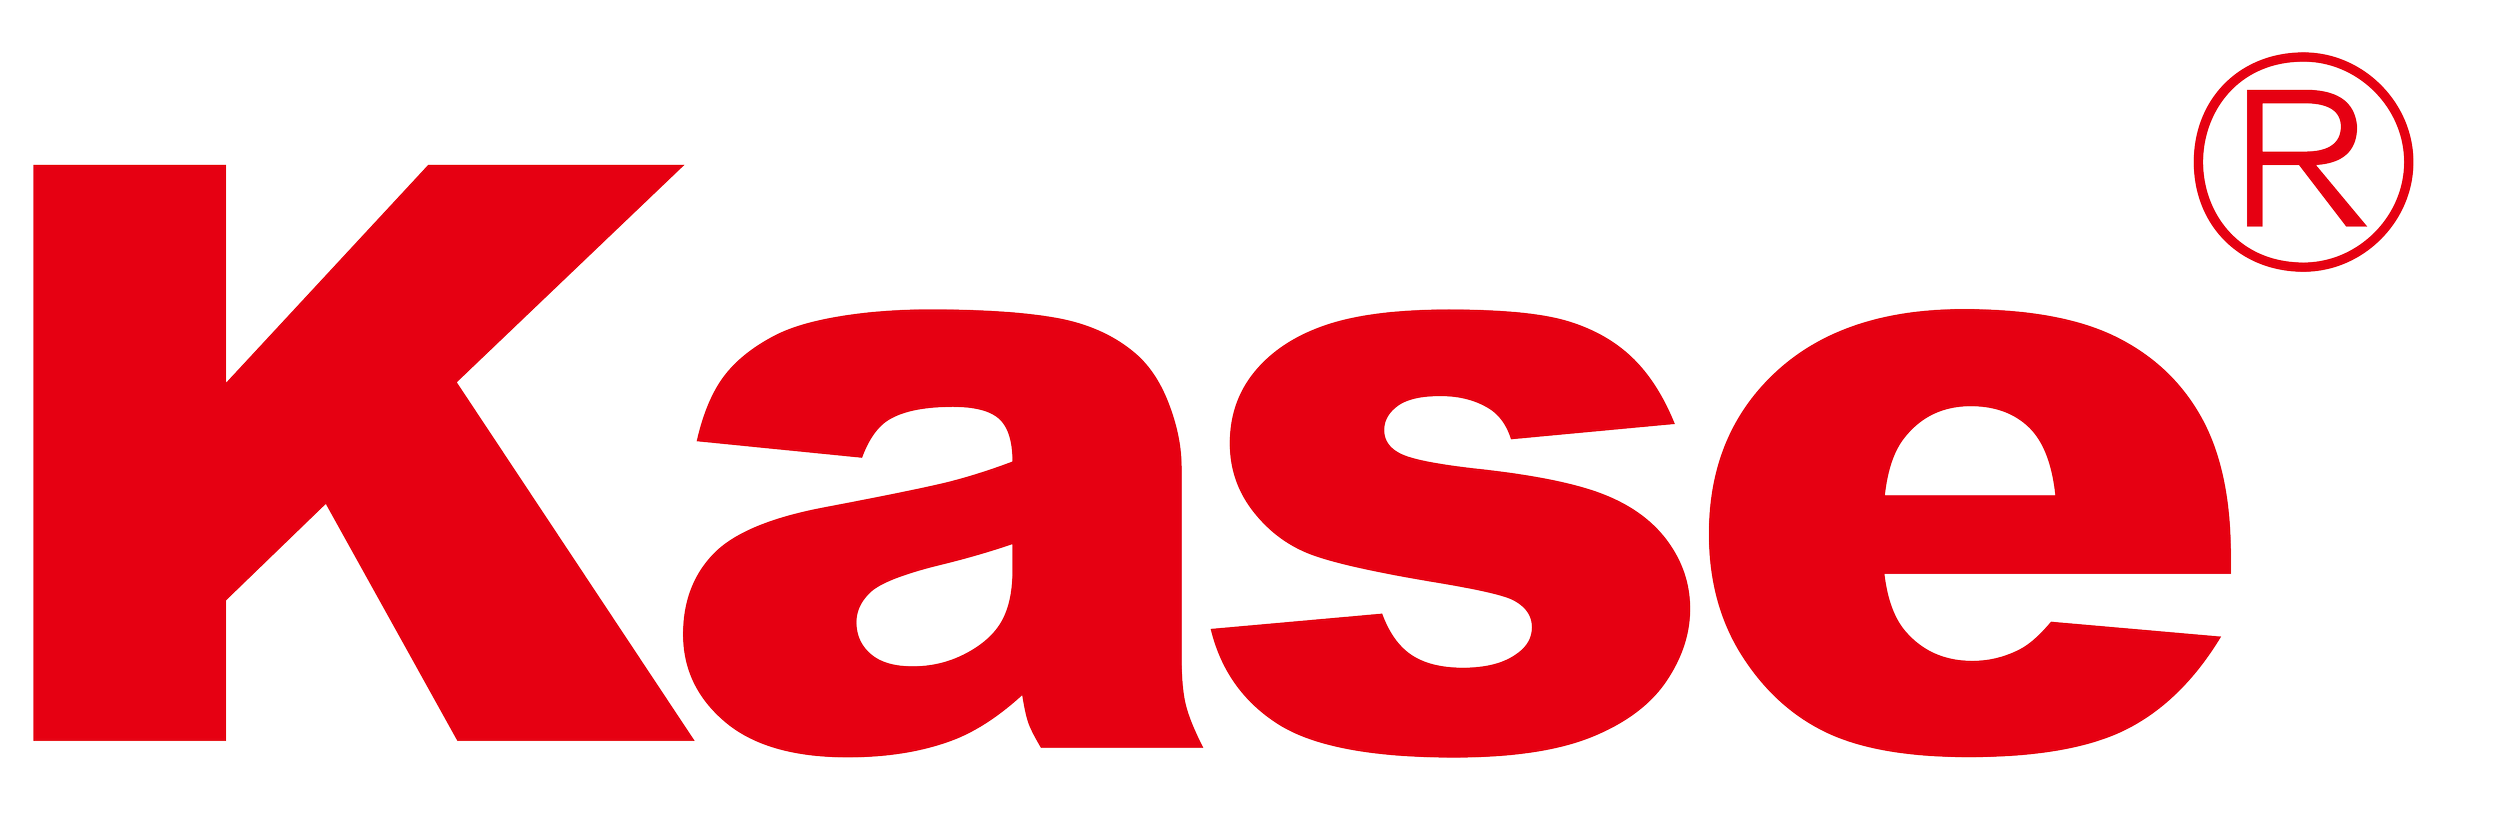 Kase Logo 20190829 (1).png